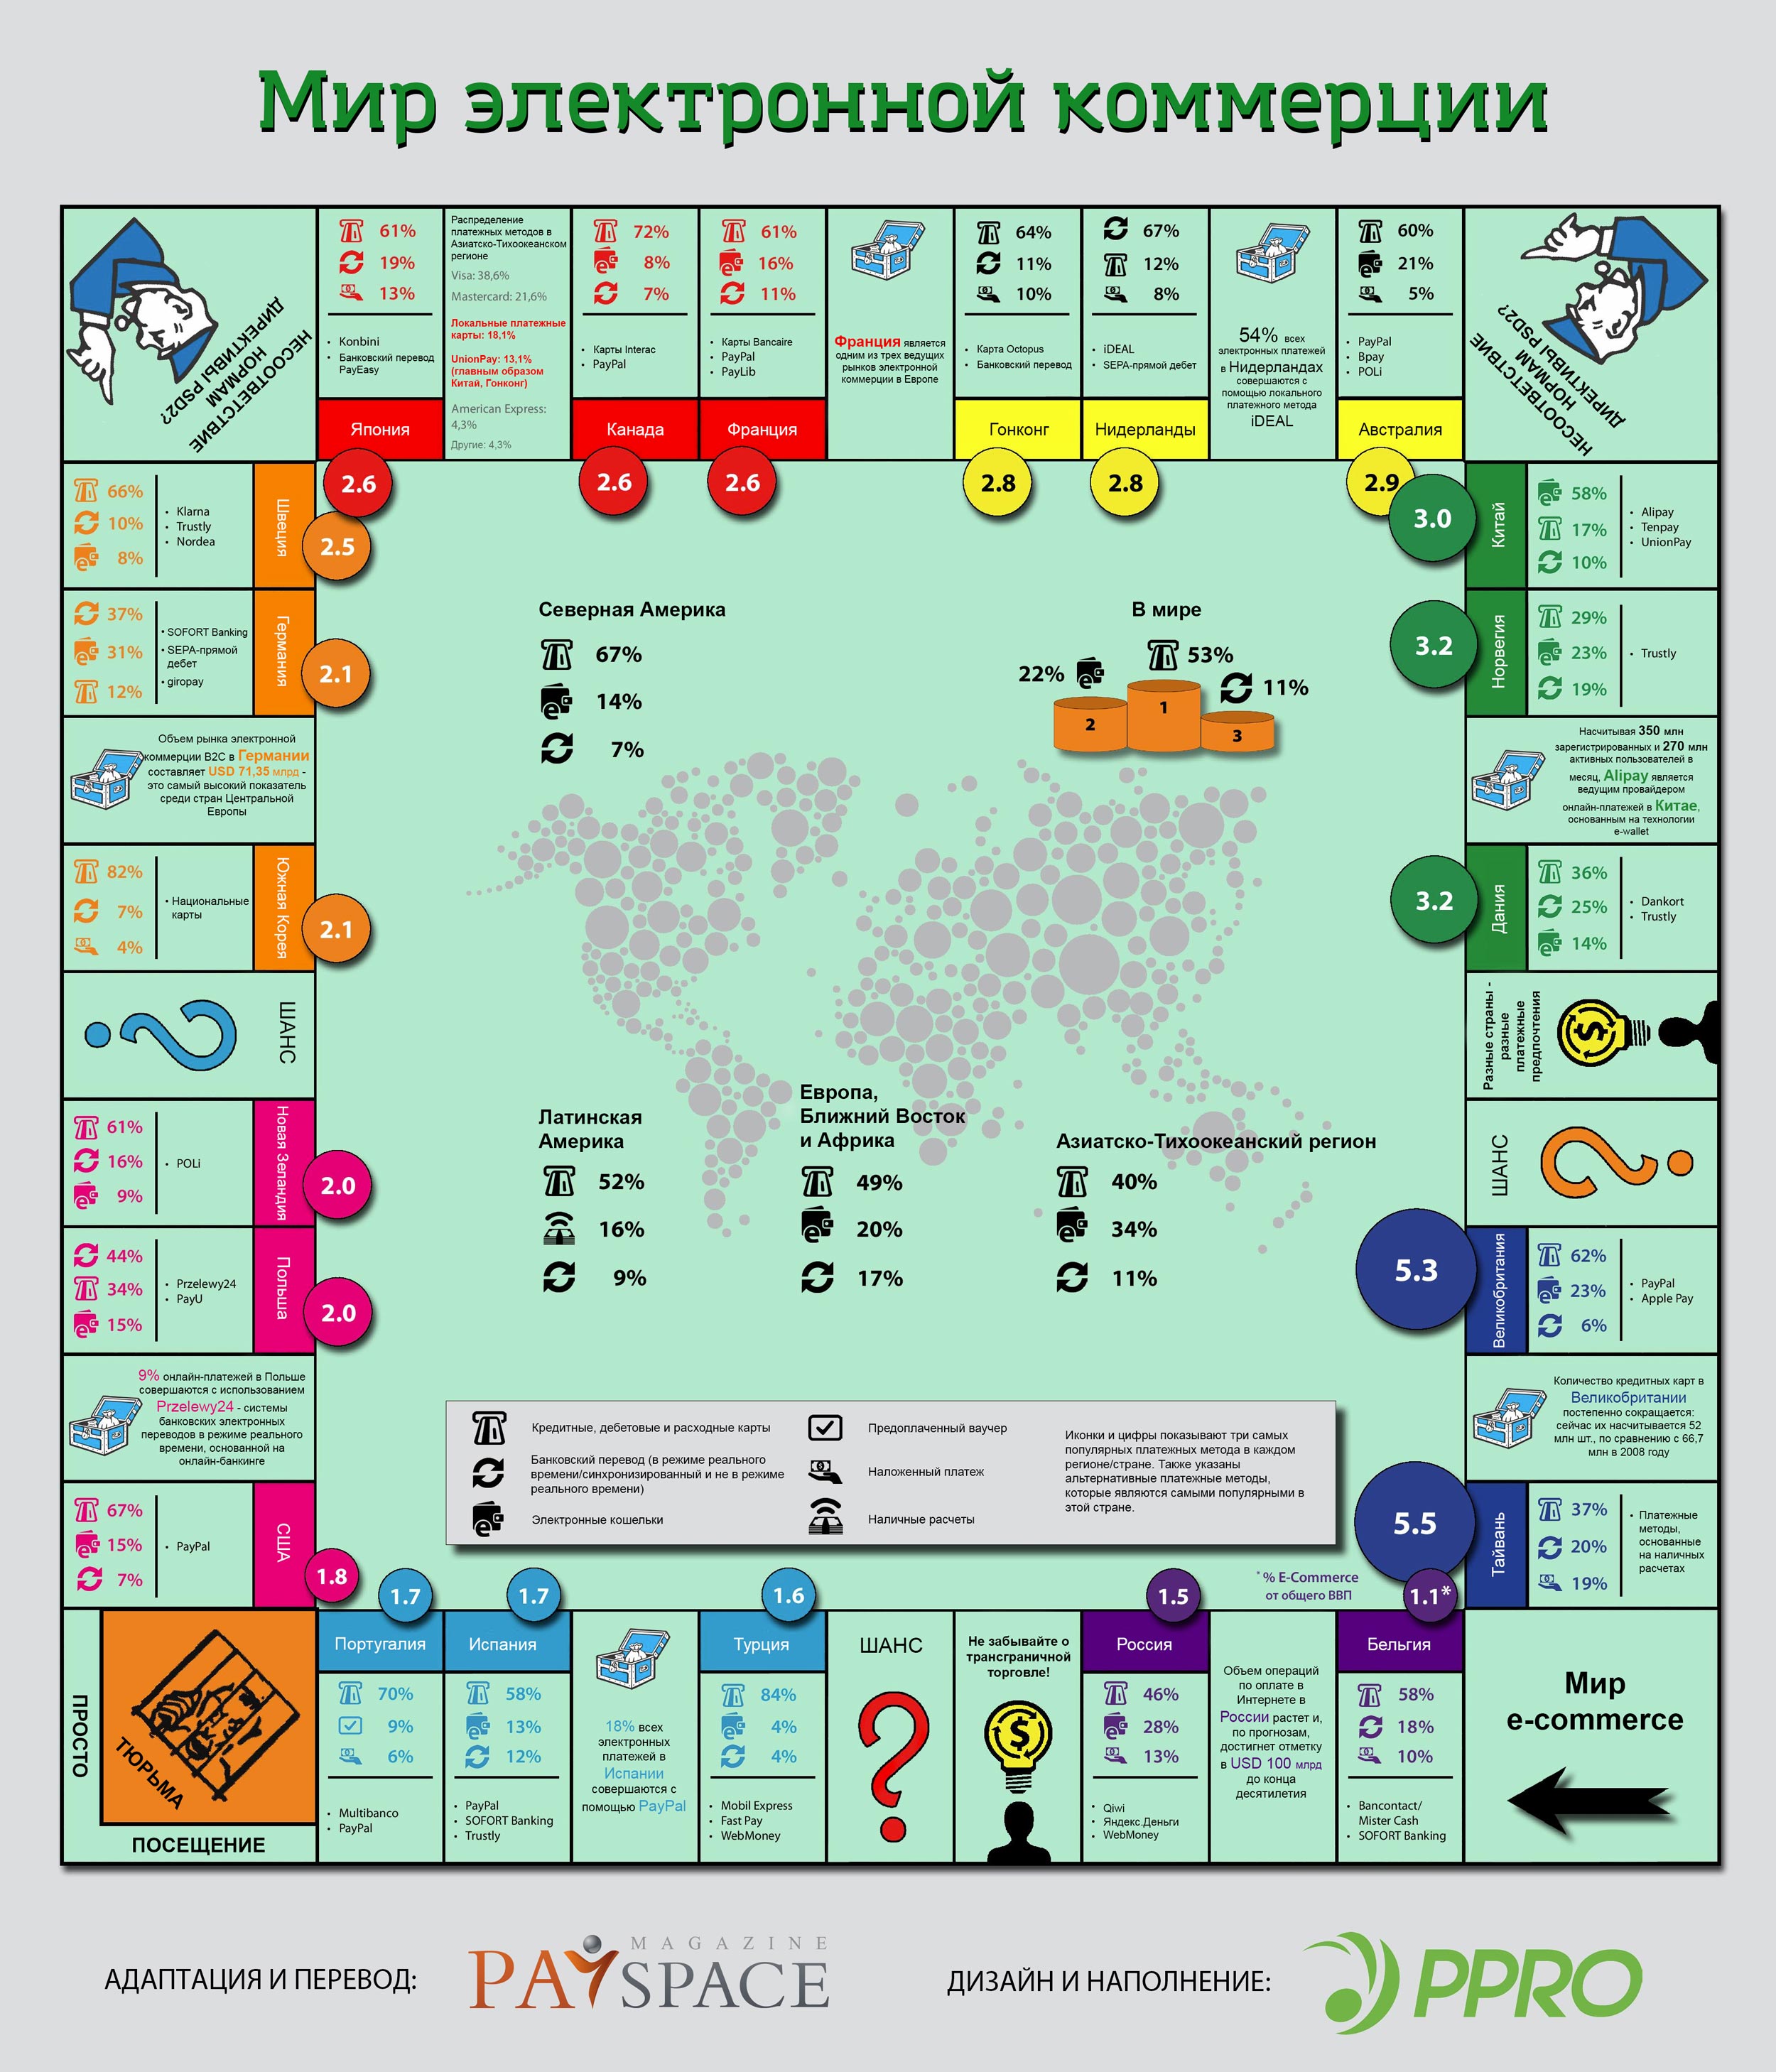 monopoly-ecommerce